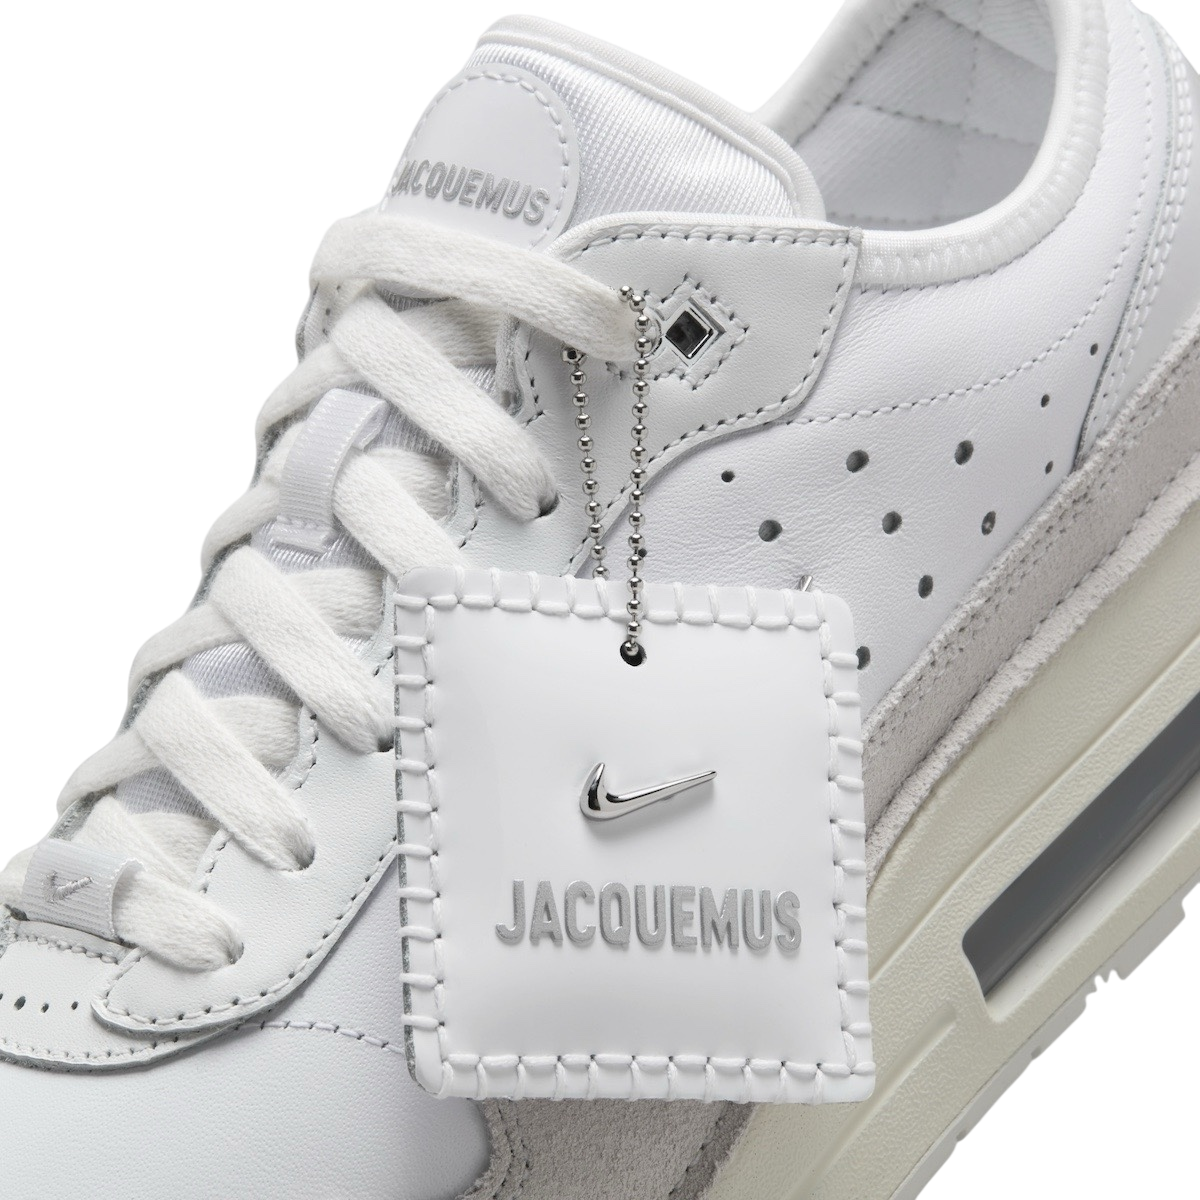 Jacquemus x Nike Air Max 1 86 Summit White